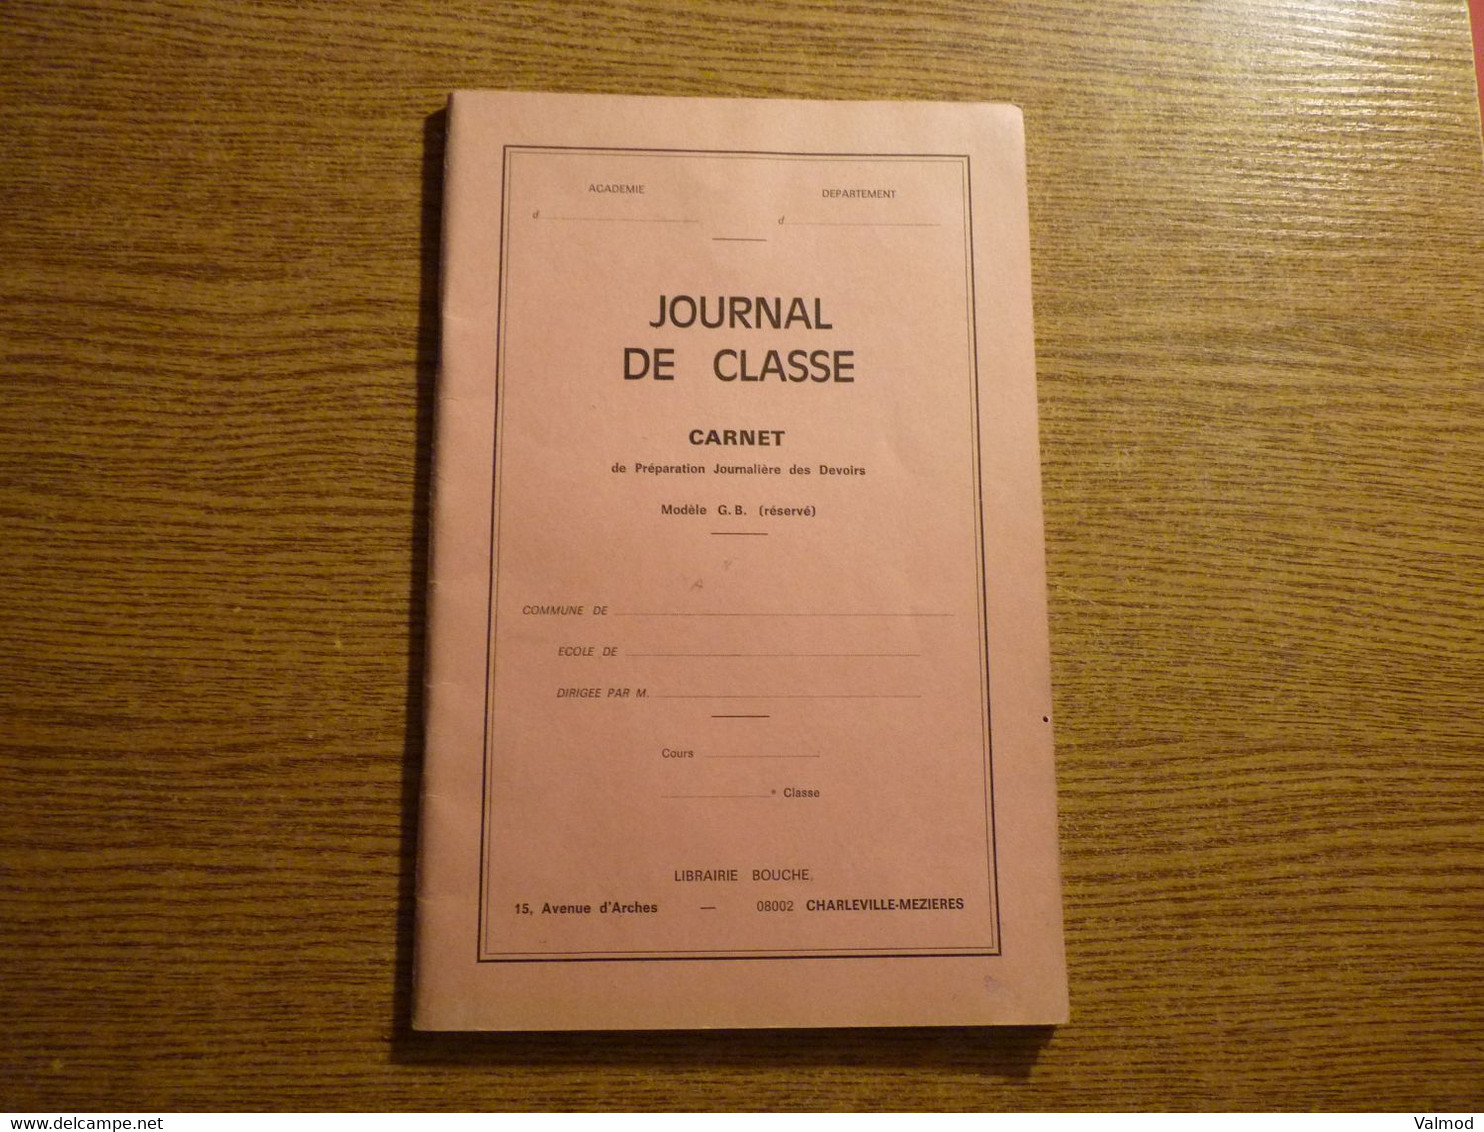 Scolaire - Journal De Classe - Carnet De Préparation Journalière Des Devoirs - Librairie Bouche - Charleville-Mézières. - Matériel Et Accessoires